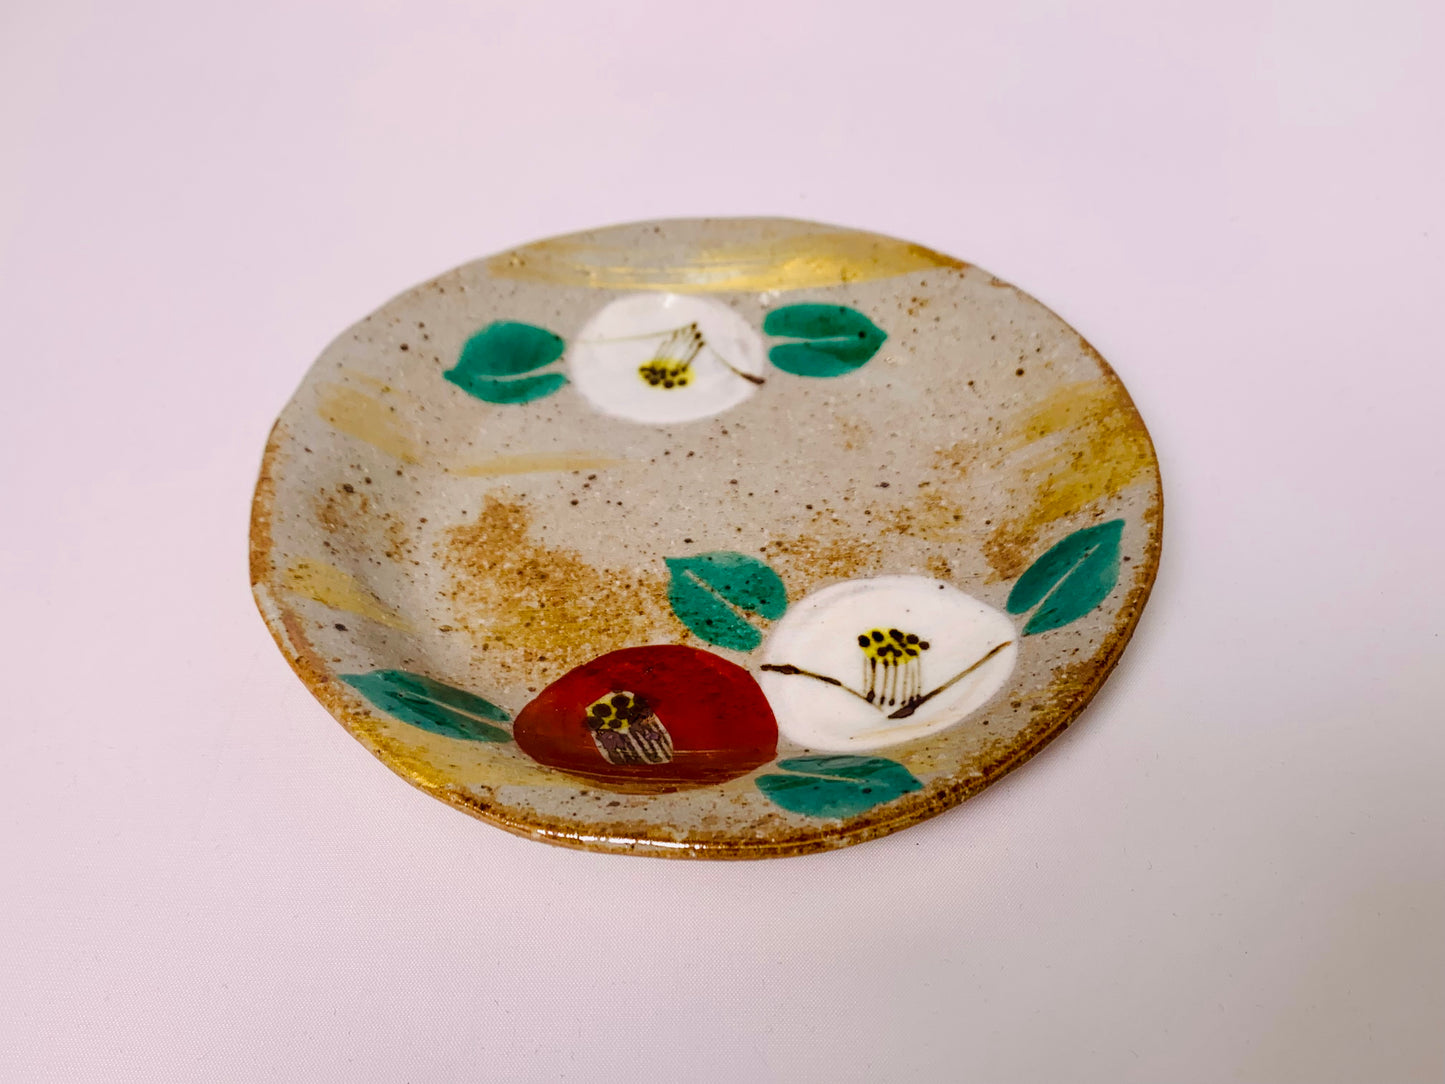 金彩椿 コーヒー 碗 小皿 14cm セット 漆 ティースプーン付き